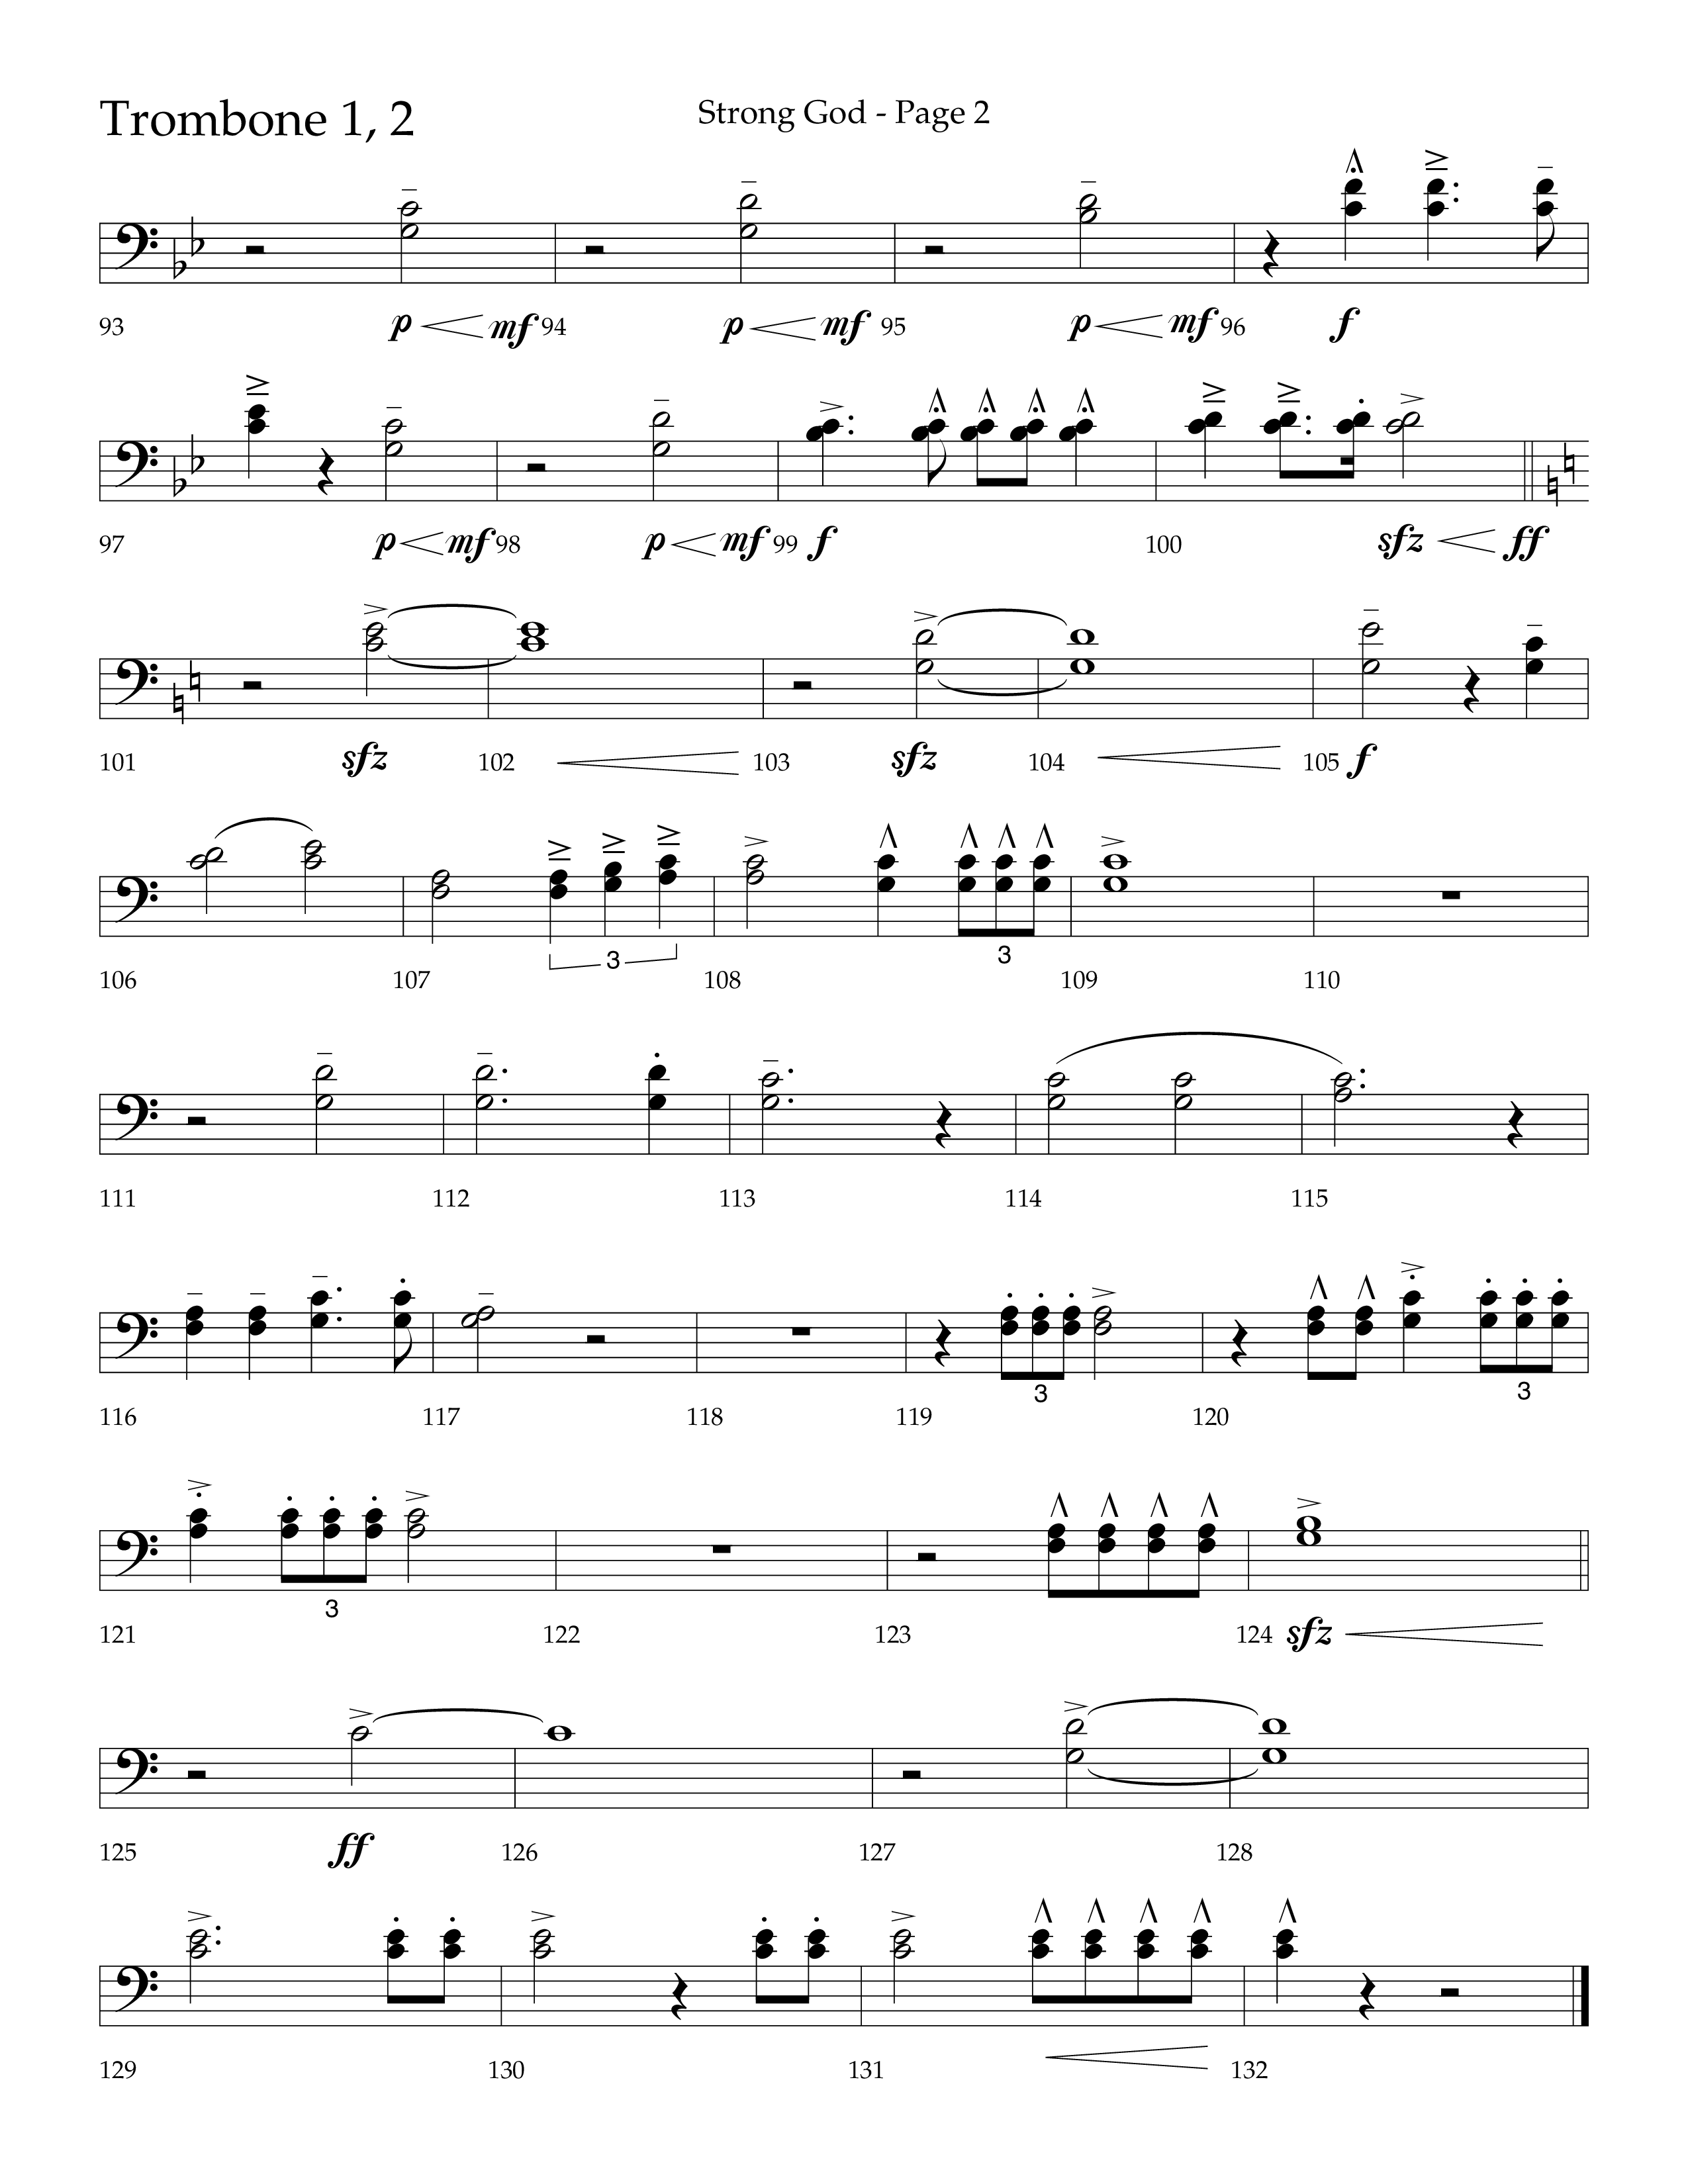 Strong God (Choral Anthem SATB) Trombone 1/2 (Lifeway Choral / Arr. Craig Adams / Arr. Bruce Cokeroft / Orch. Craig Adams)